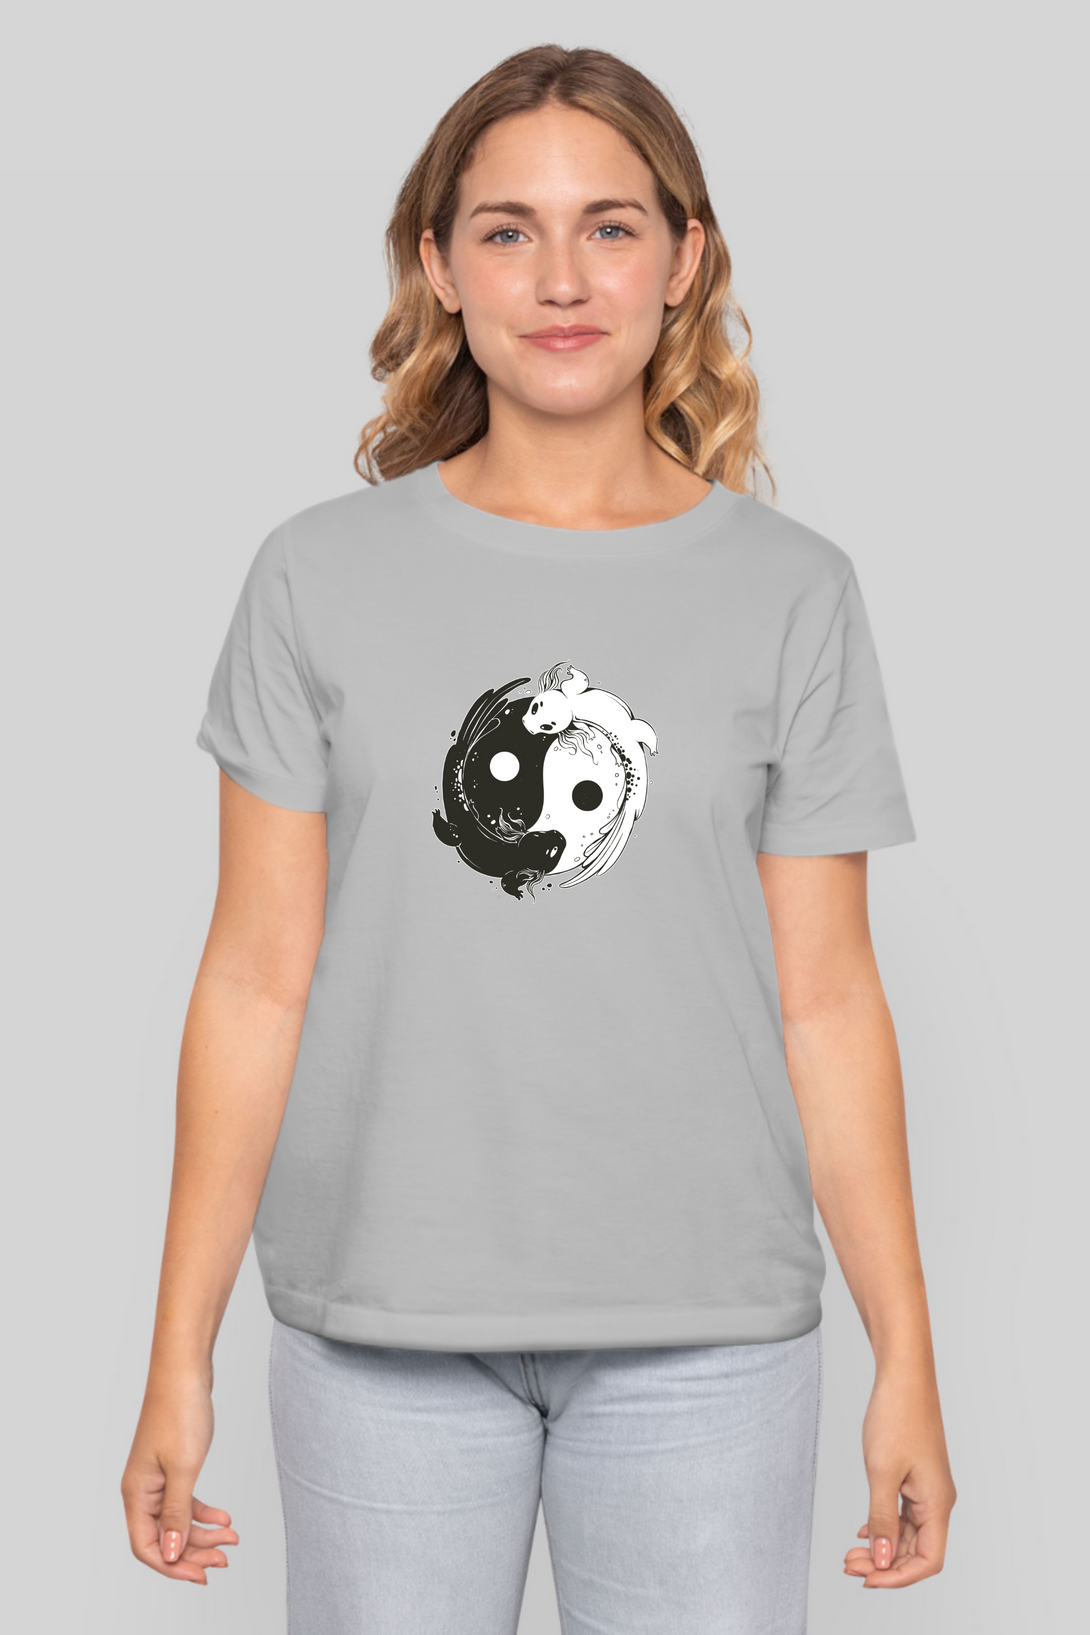 Yin Yang Axolotl Printed T-Shirt For Women - WowWaves - 10